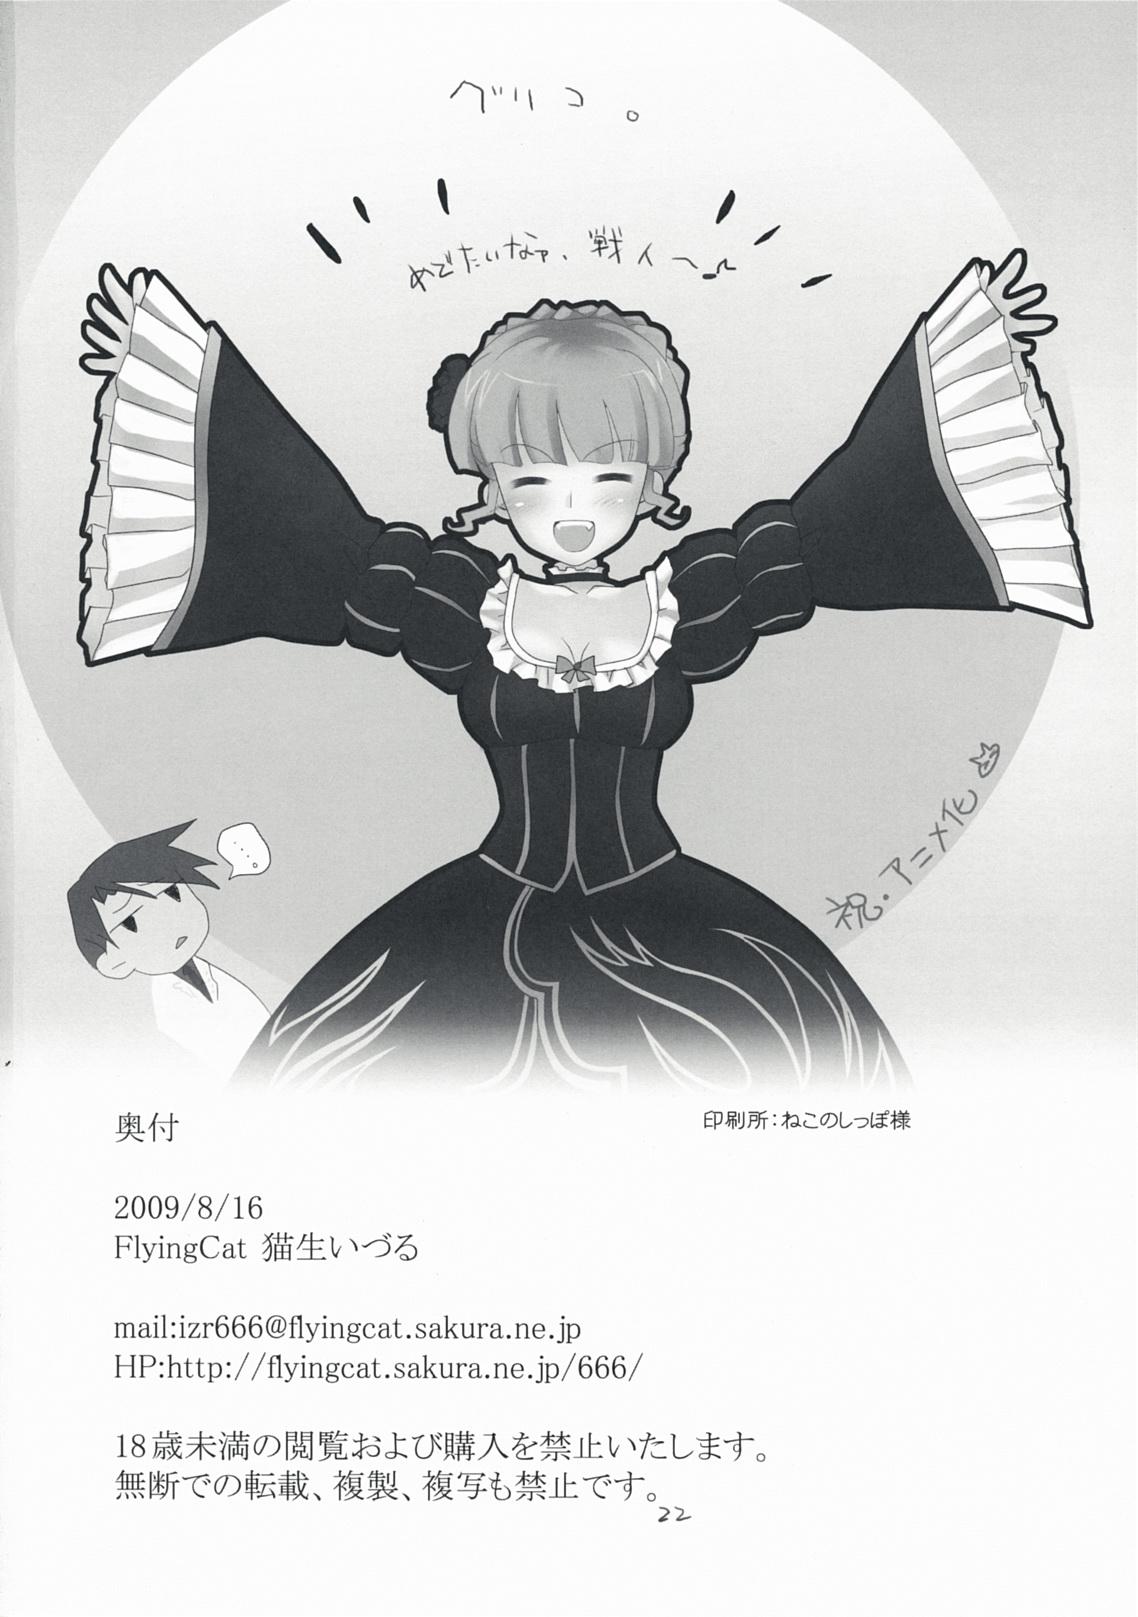 Deutsche The Queen Of Nightmare - Umineko no naku koro ni Chaturbate - Page 22